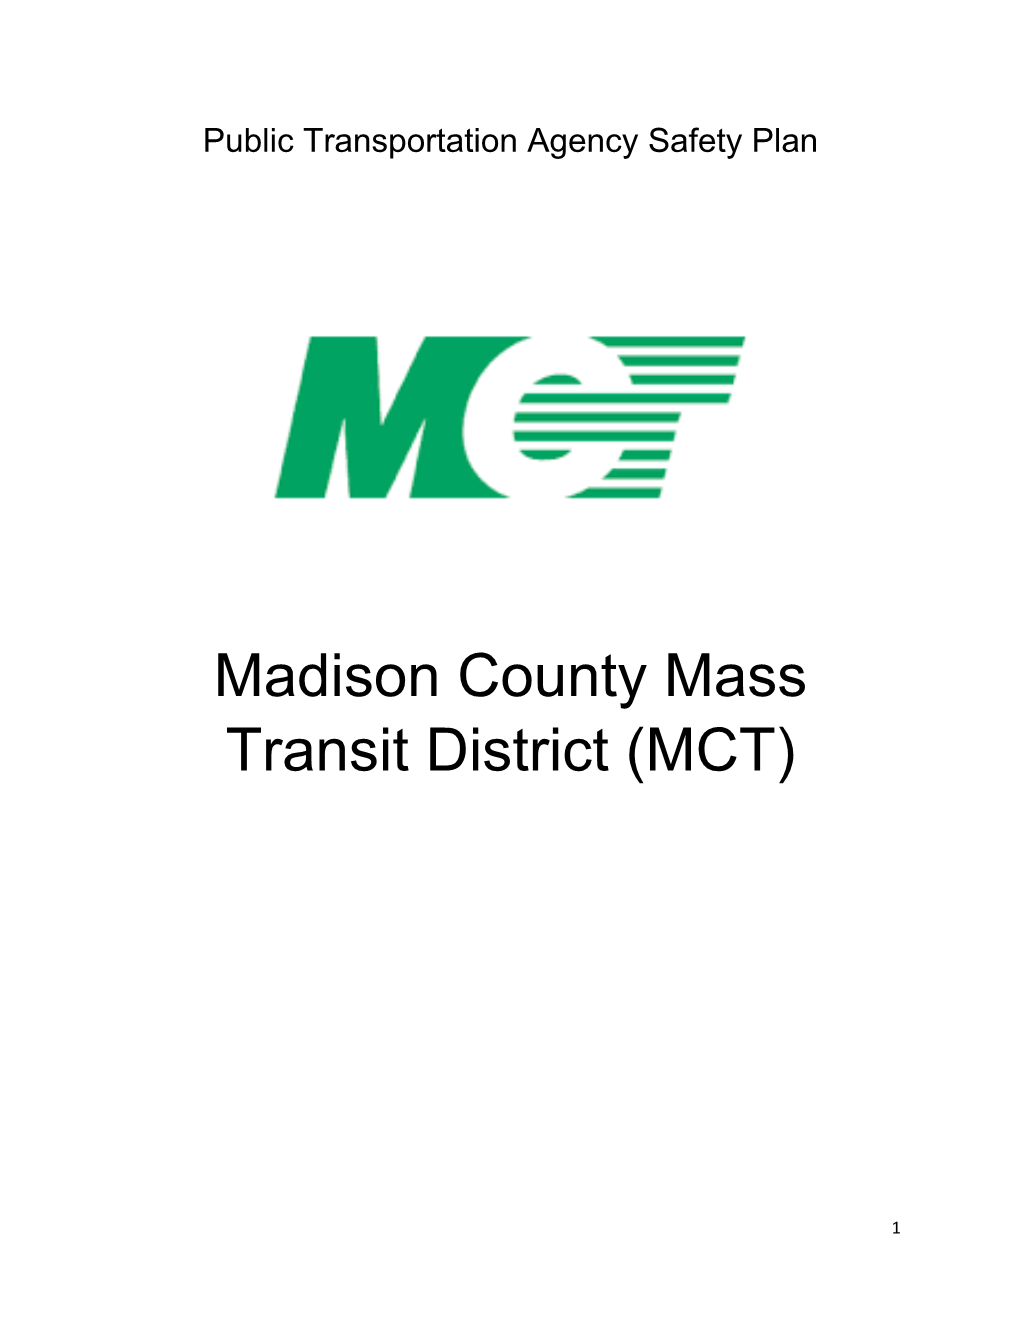 Madison County Mass Transit District (MCT)